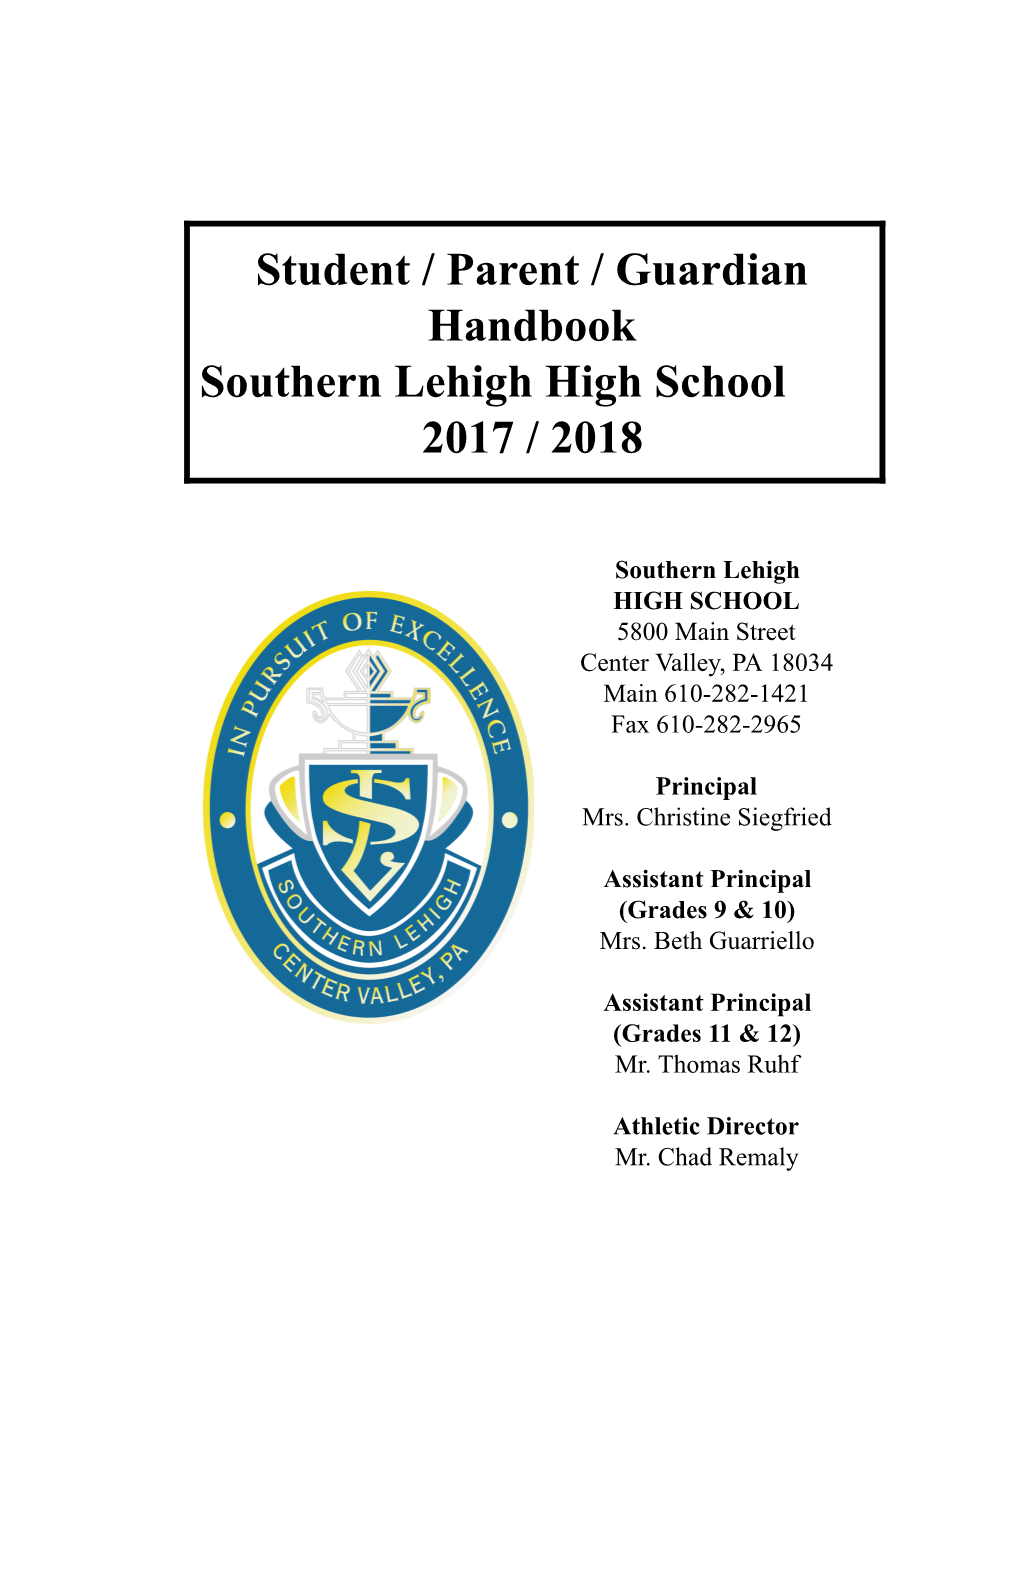 Student / Parent / Guardian Handbook Southern Lehigh High School 2017 / 2018